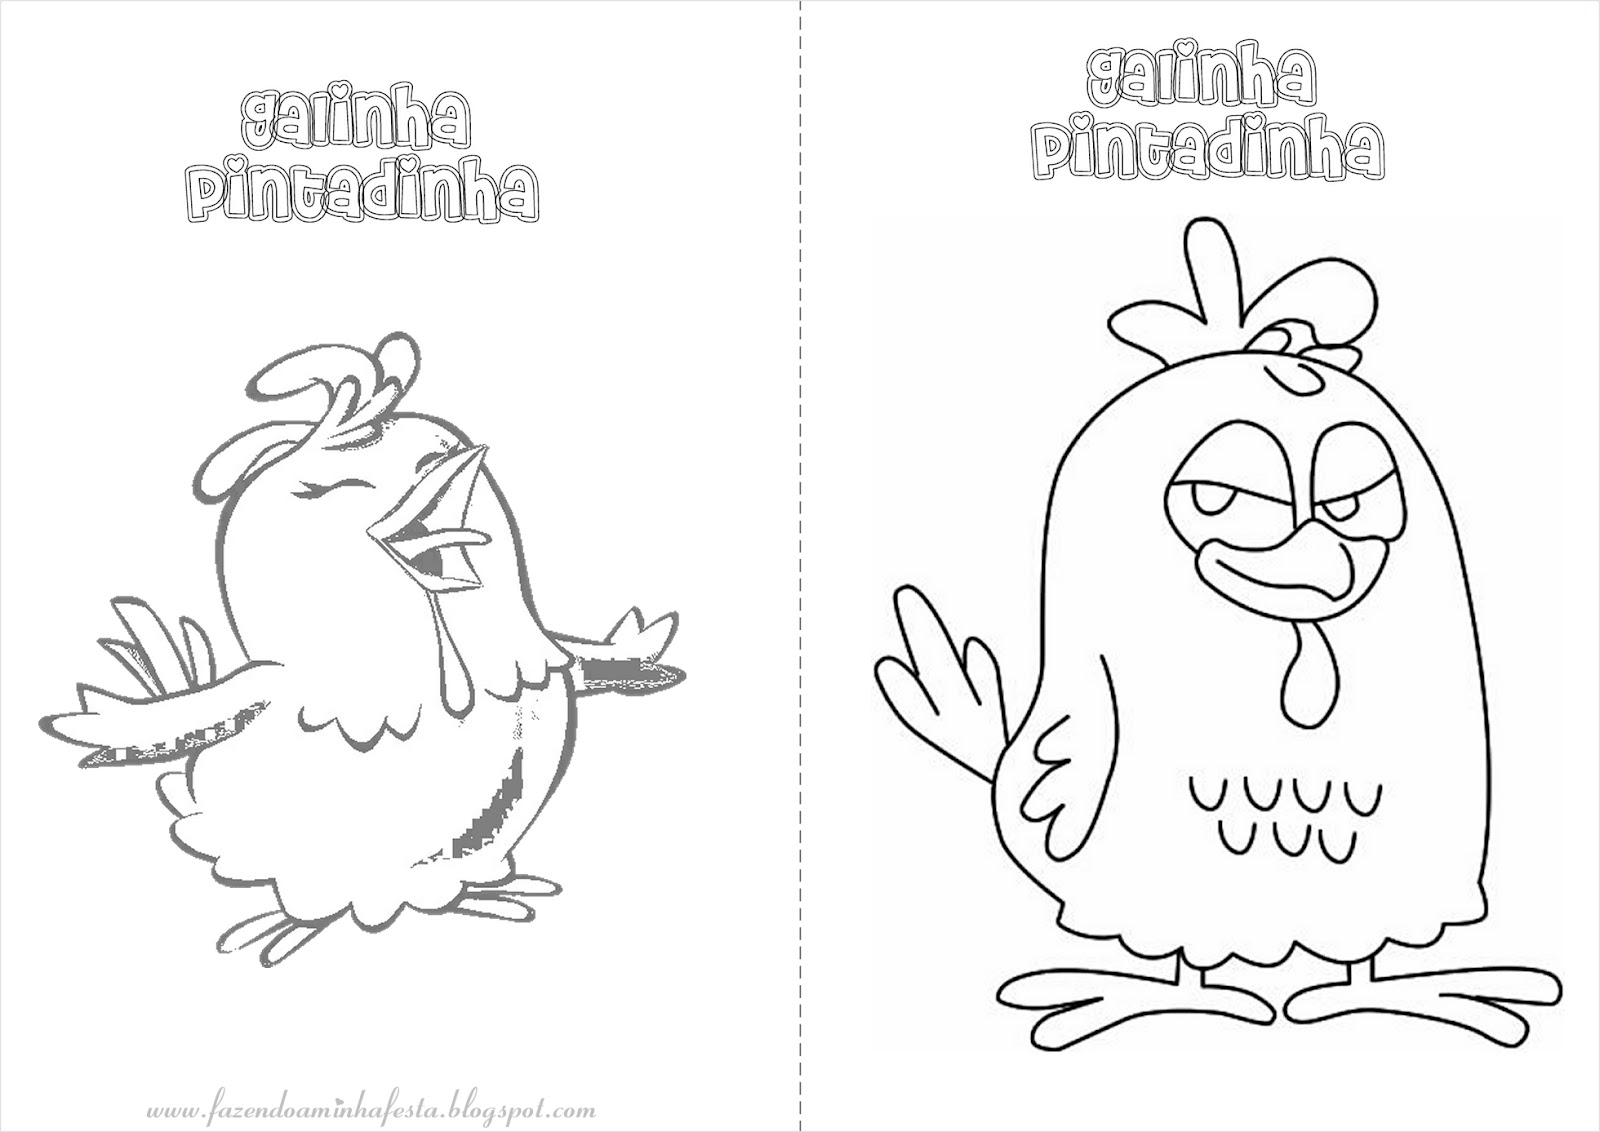 Galinha Pintadinha Archives - Desenhos para pintar e colorir